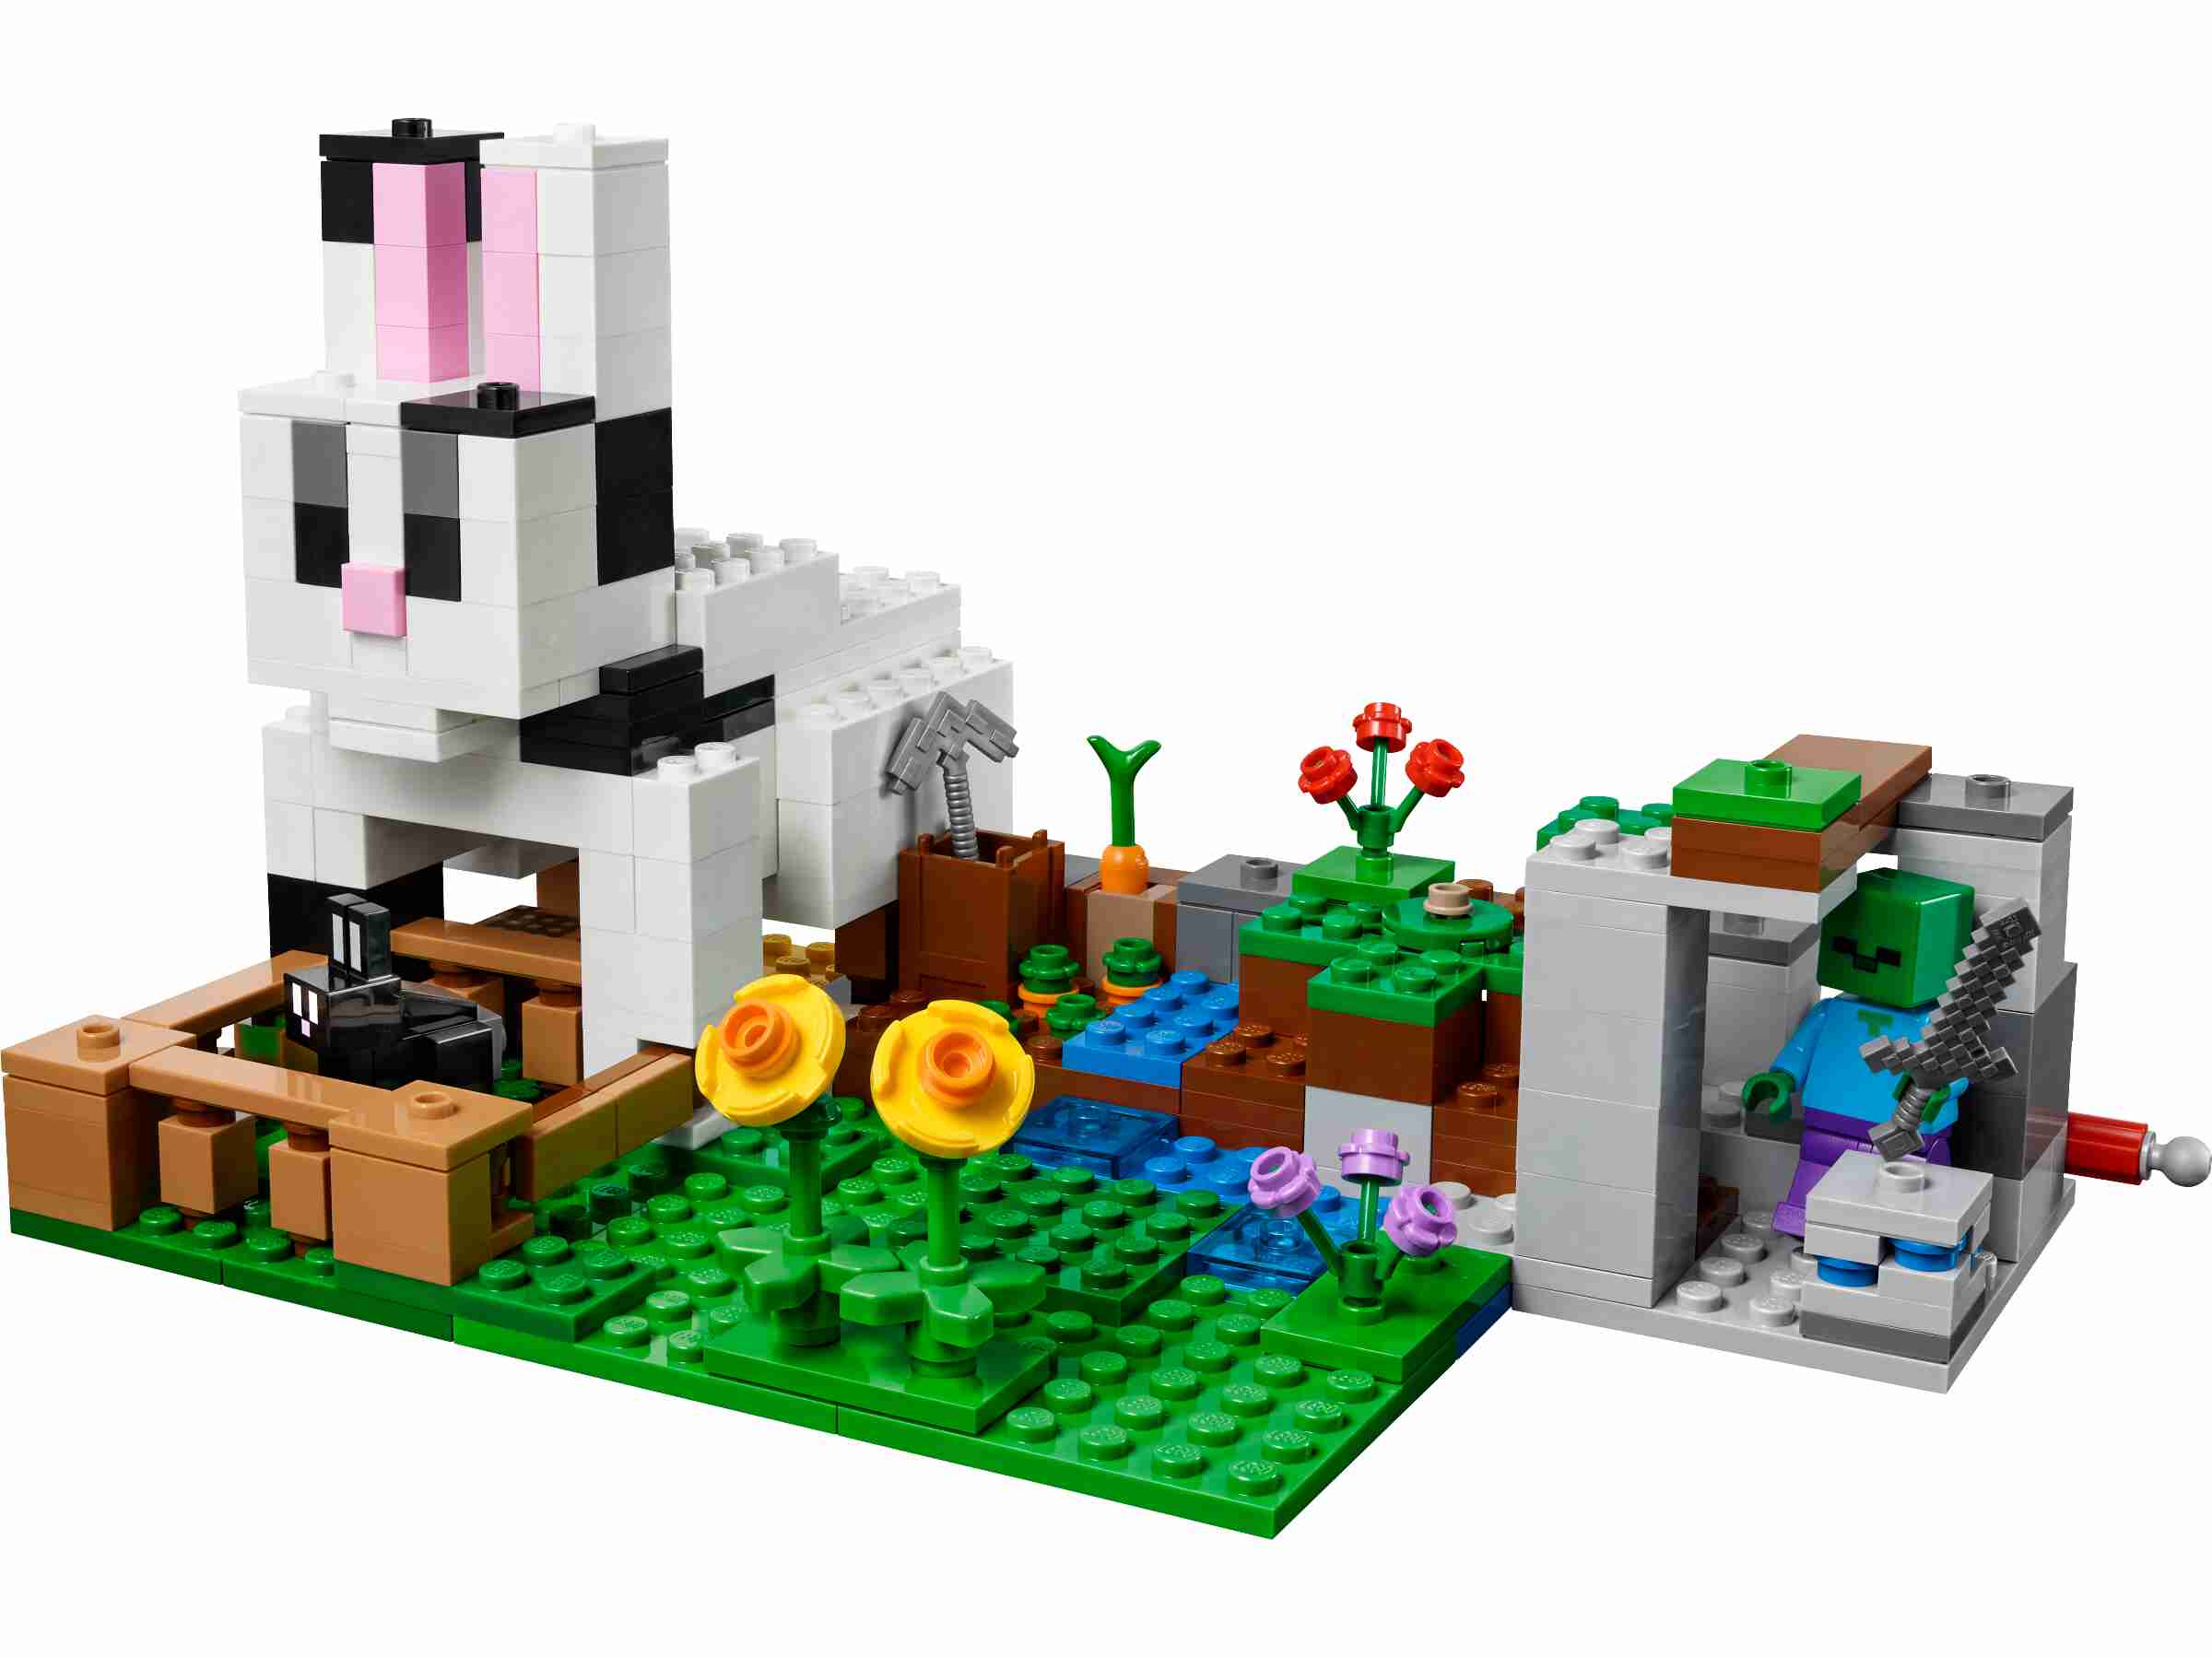 LEGO 21181 Minecraft Die Kaninchenranch mit Zähmer, Zombie und Tieren